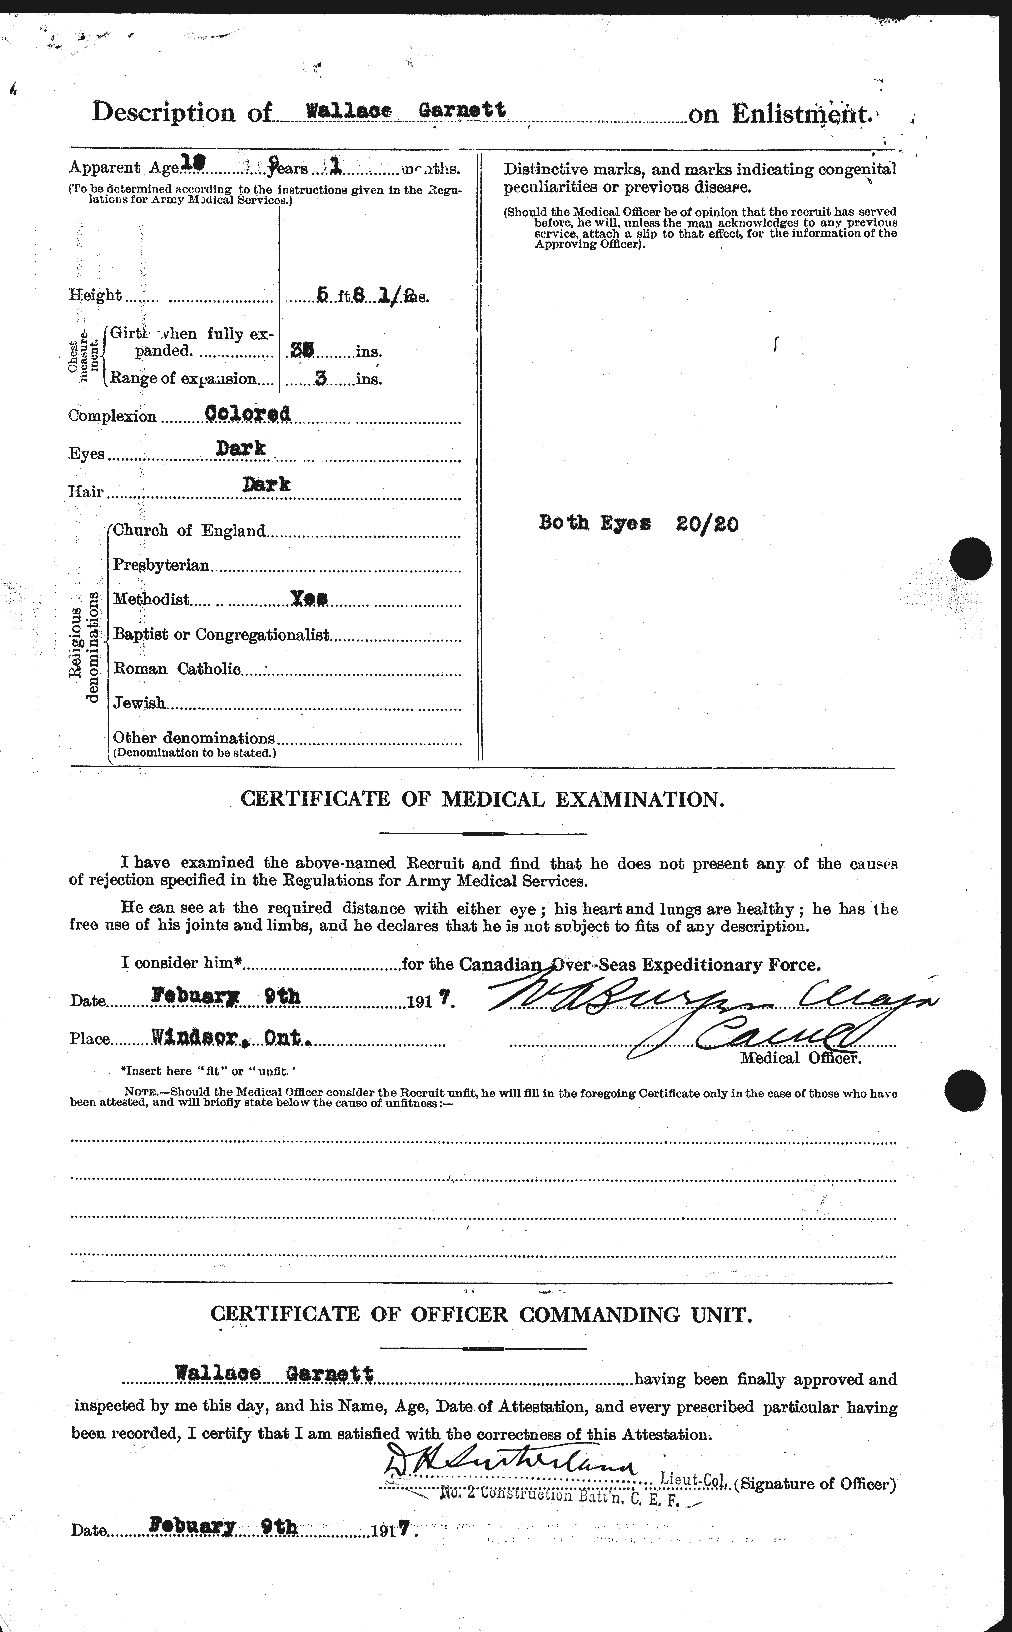 Dossiers du Personnel de la Première Guerre mondiale - CEC 341949b